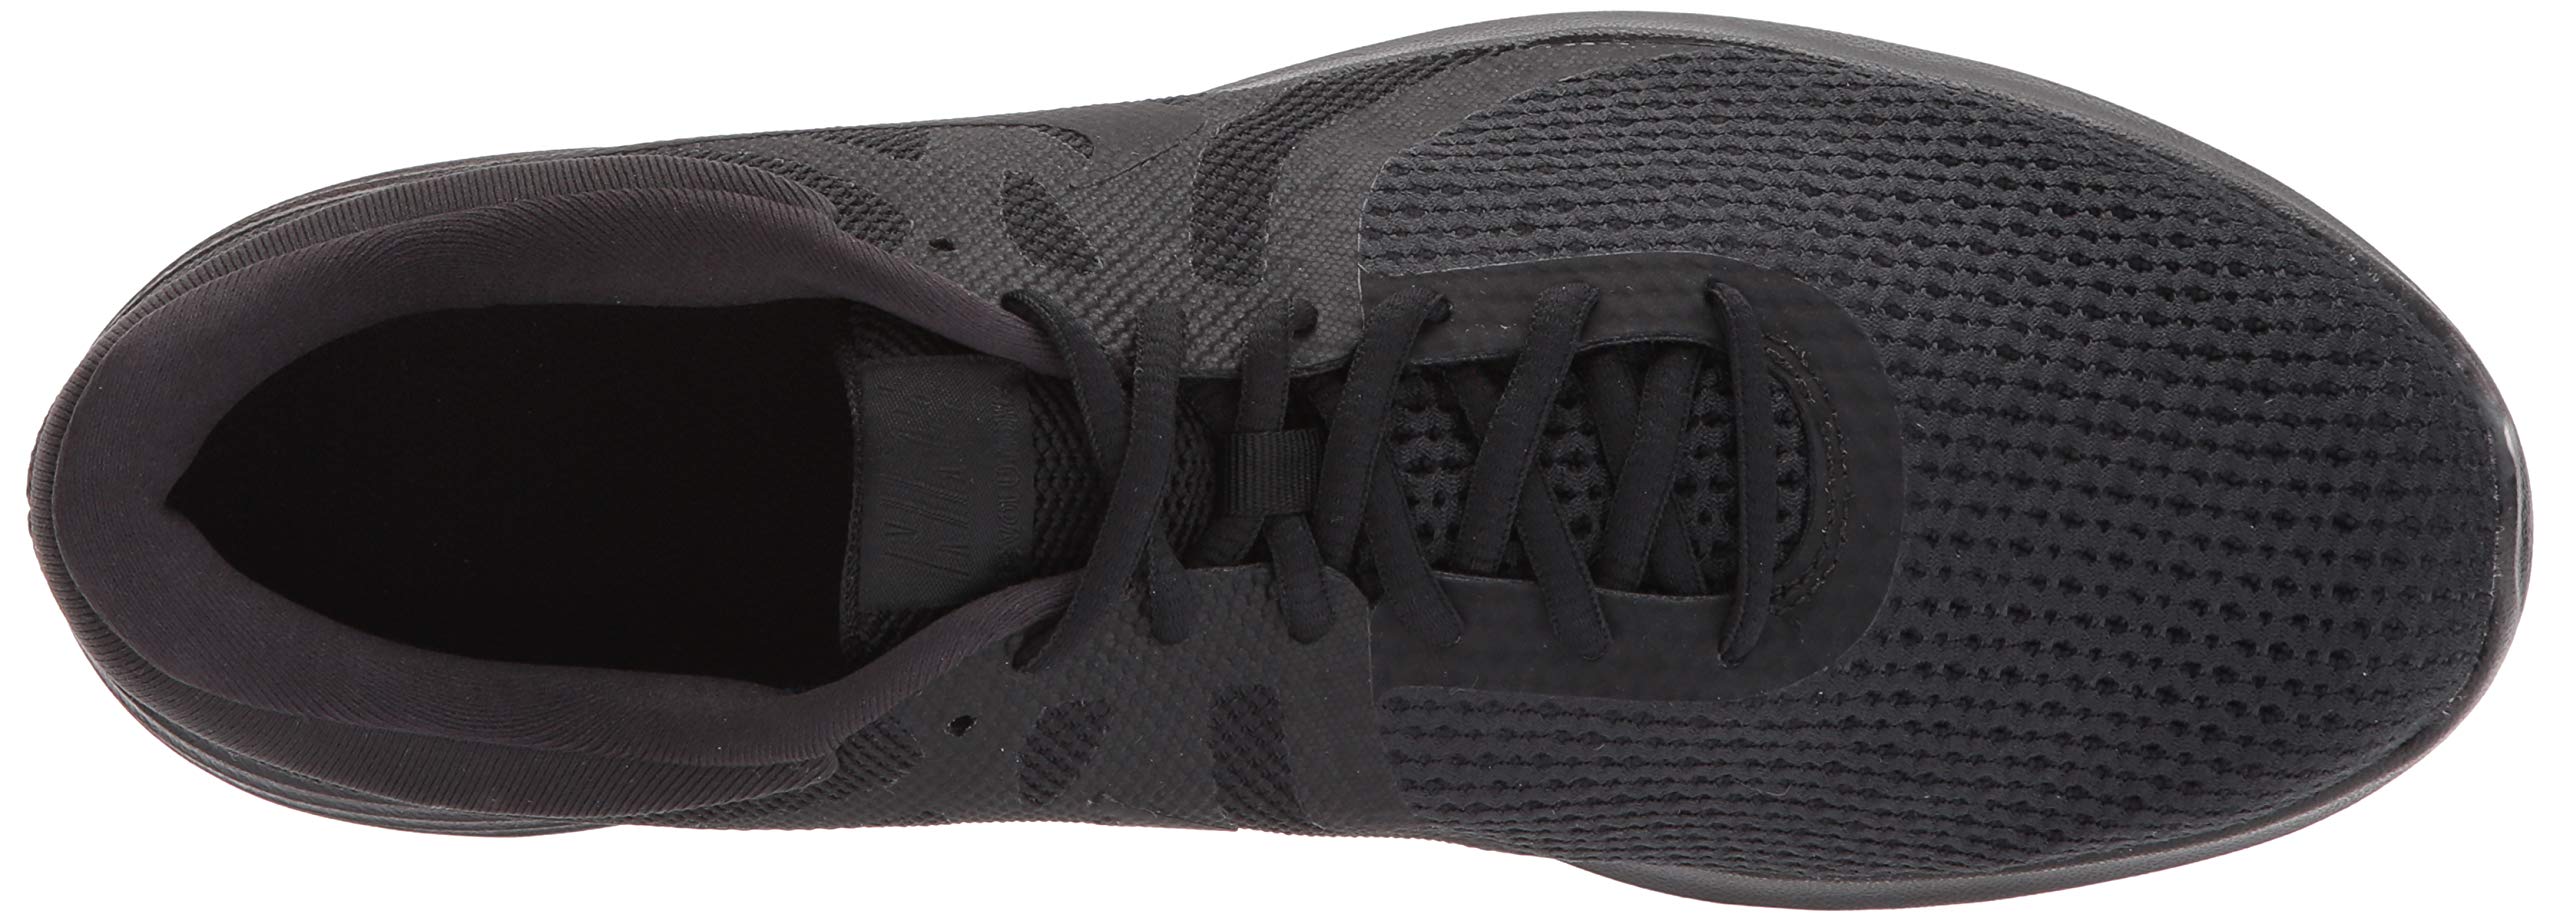 Nike Men's Revolution 4 Running Shoe, Black/Black, 10 Regular US